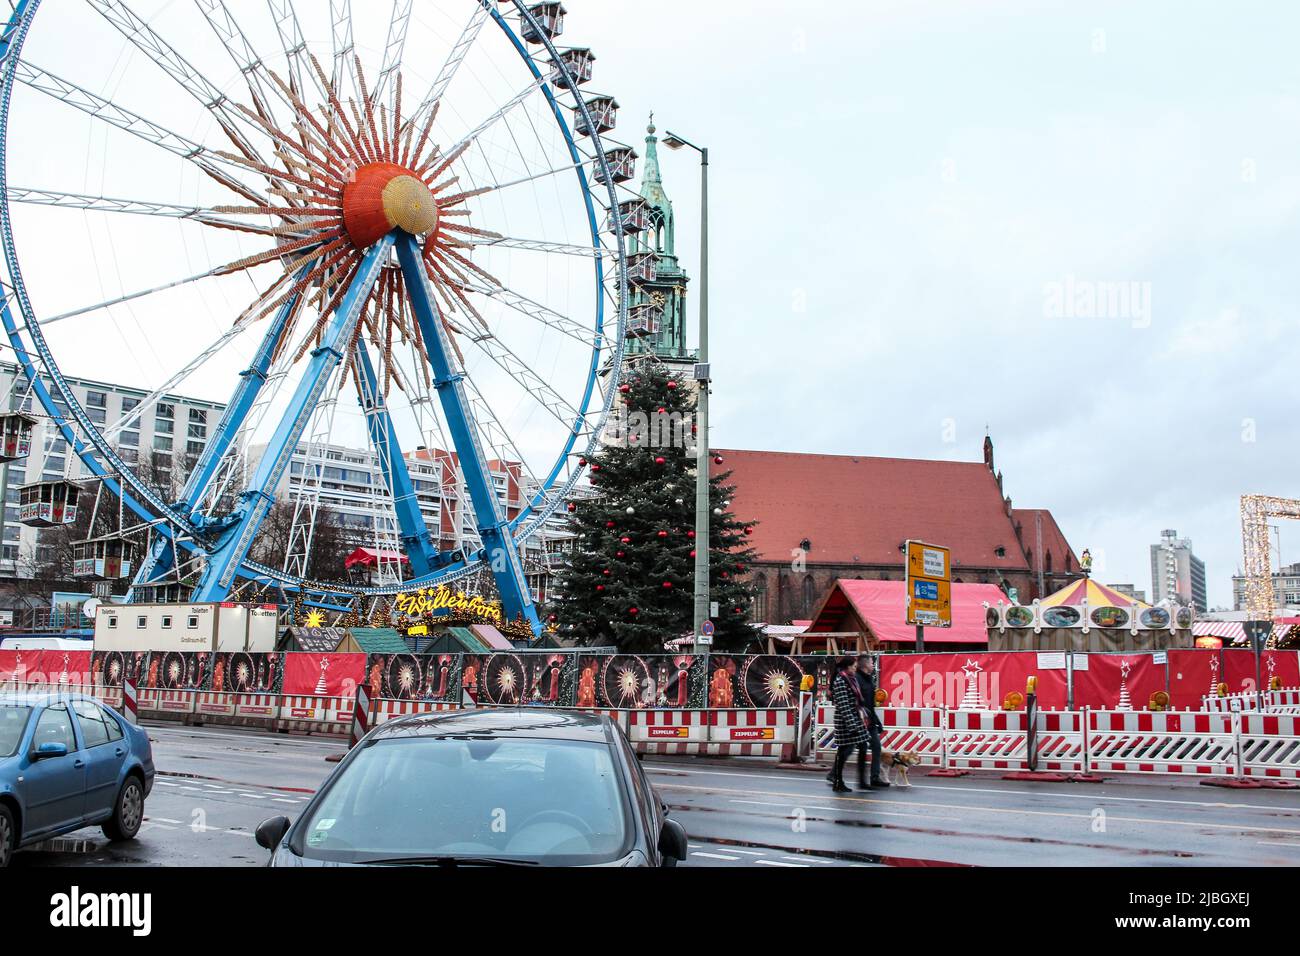 Merry puede recorrer el Berliner Weihnachtszeit en el Rotes Rathaus, uno de los mercados navideños más famosos de Berlín, desde la calle Alexanderplatz Foto de stock